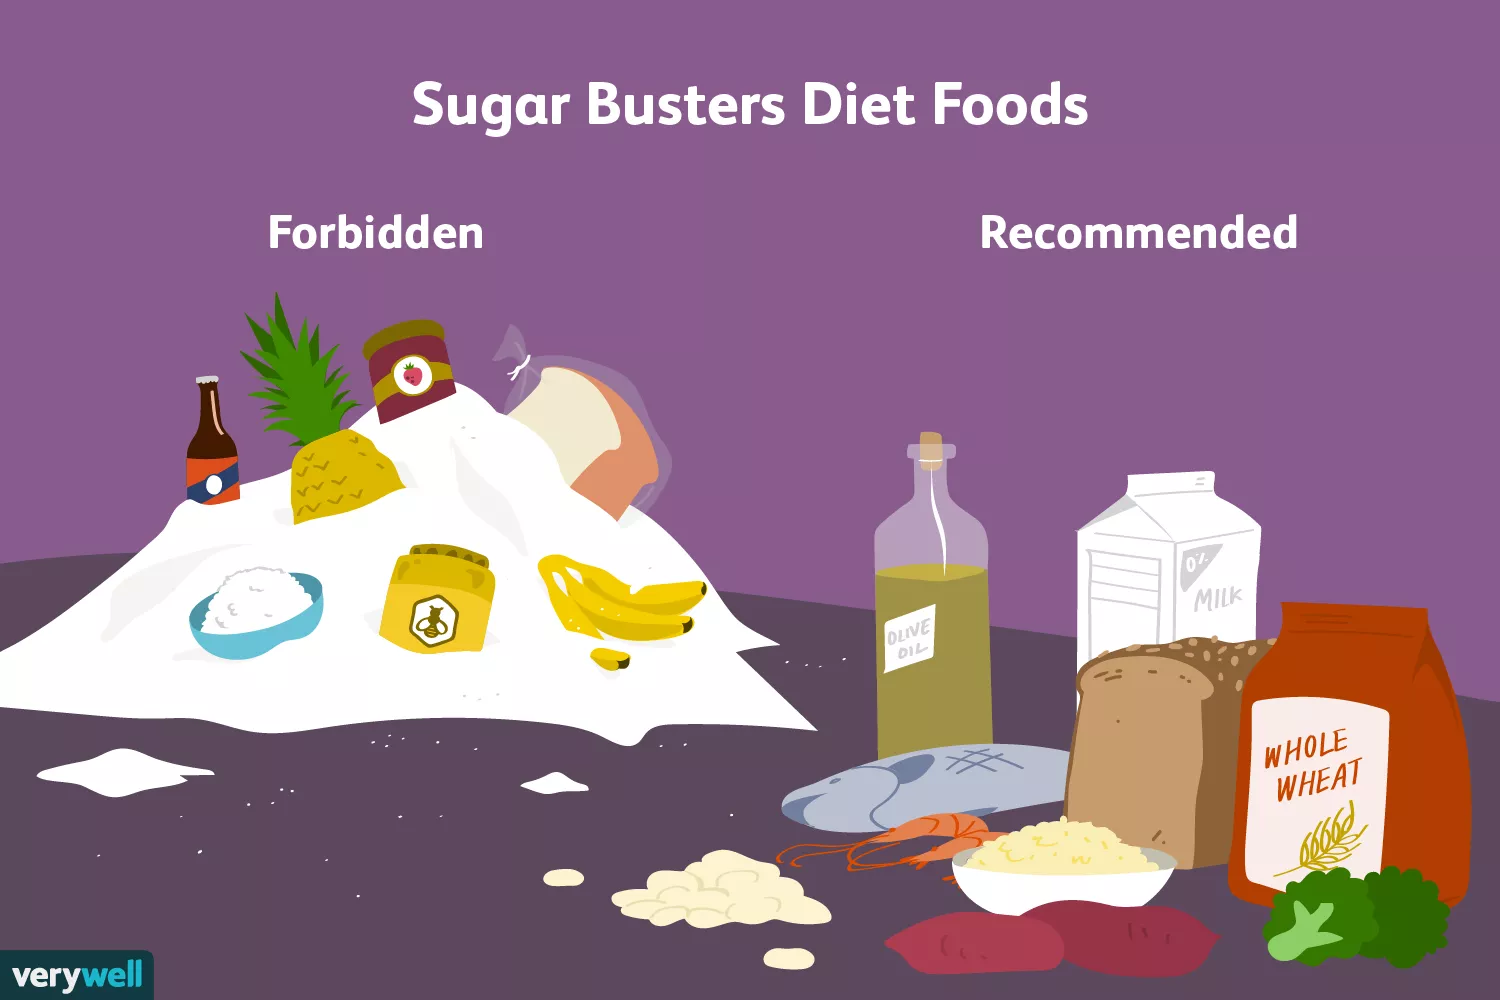 Sugar Busters diet foods